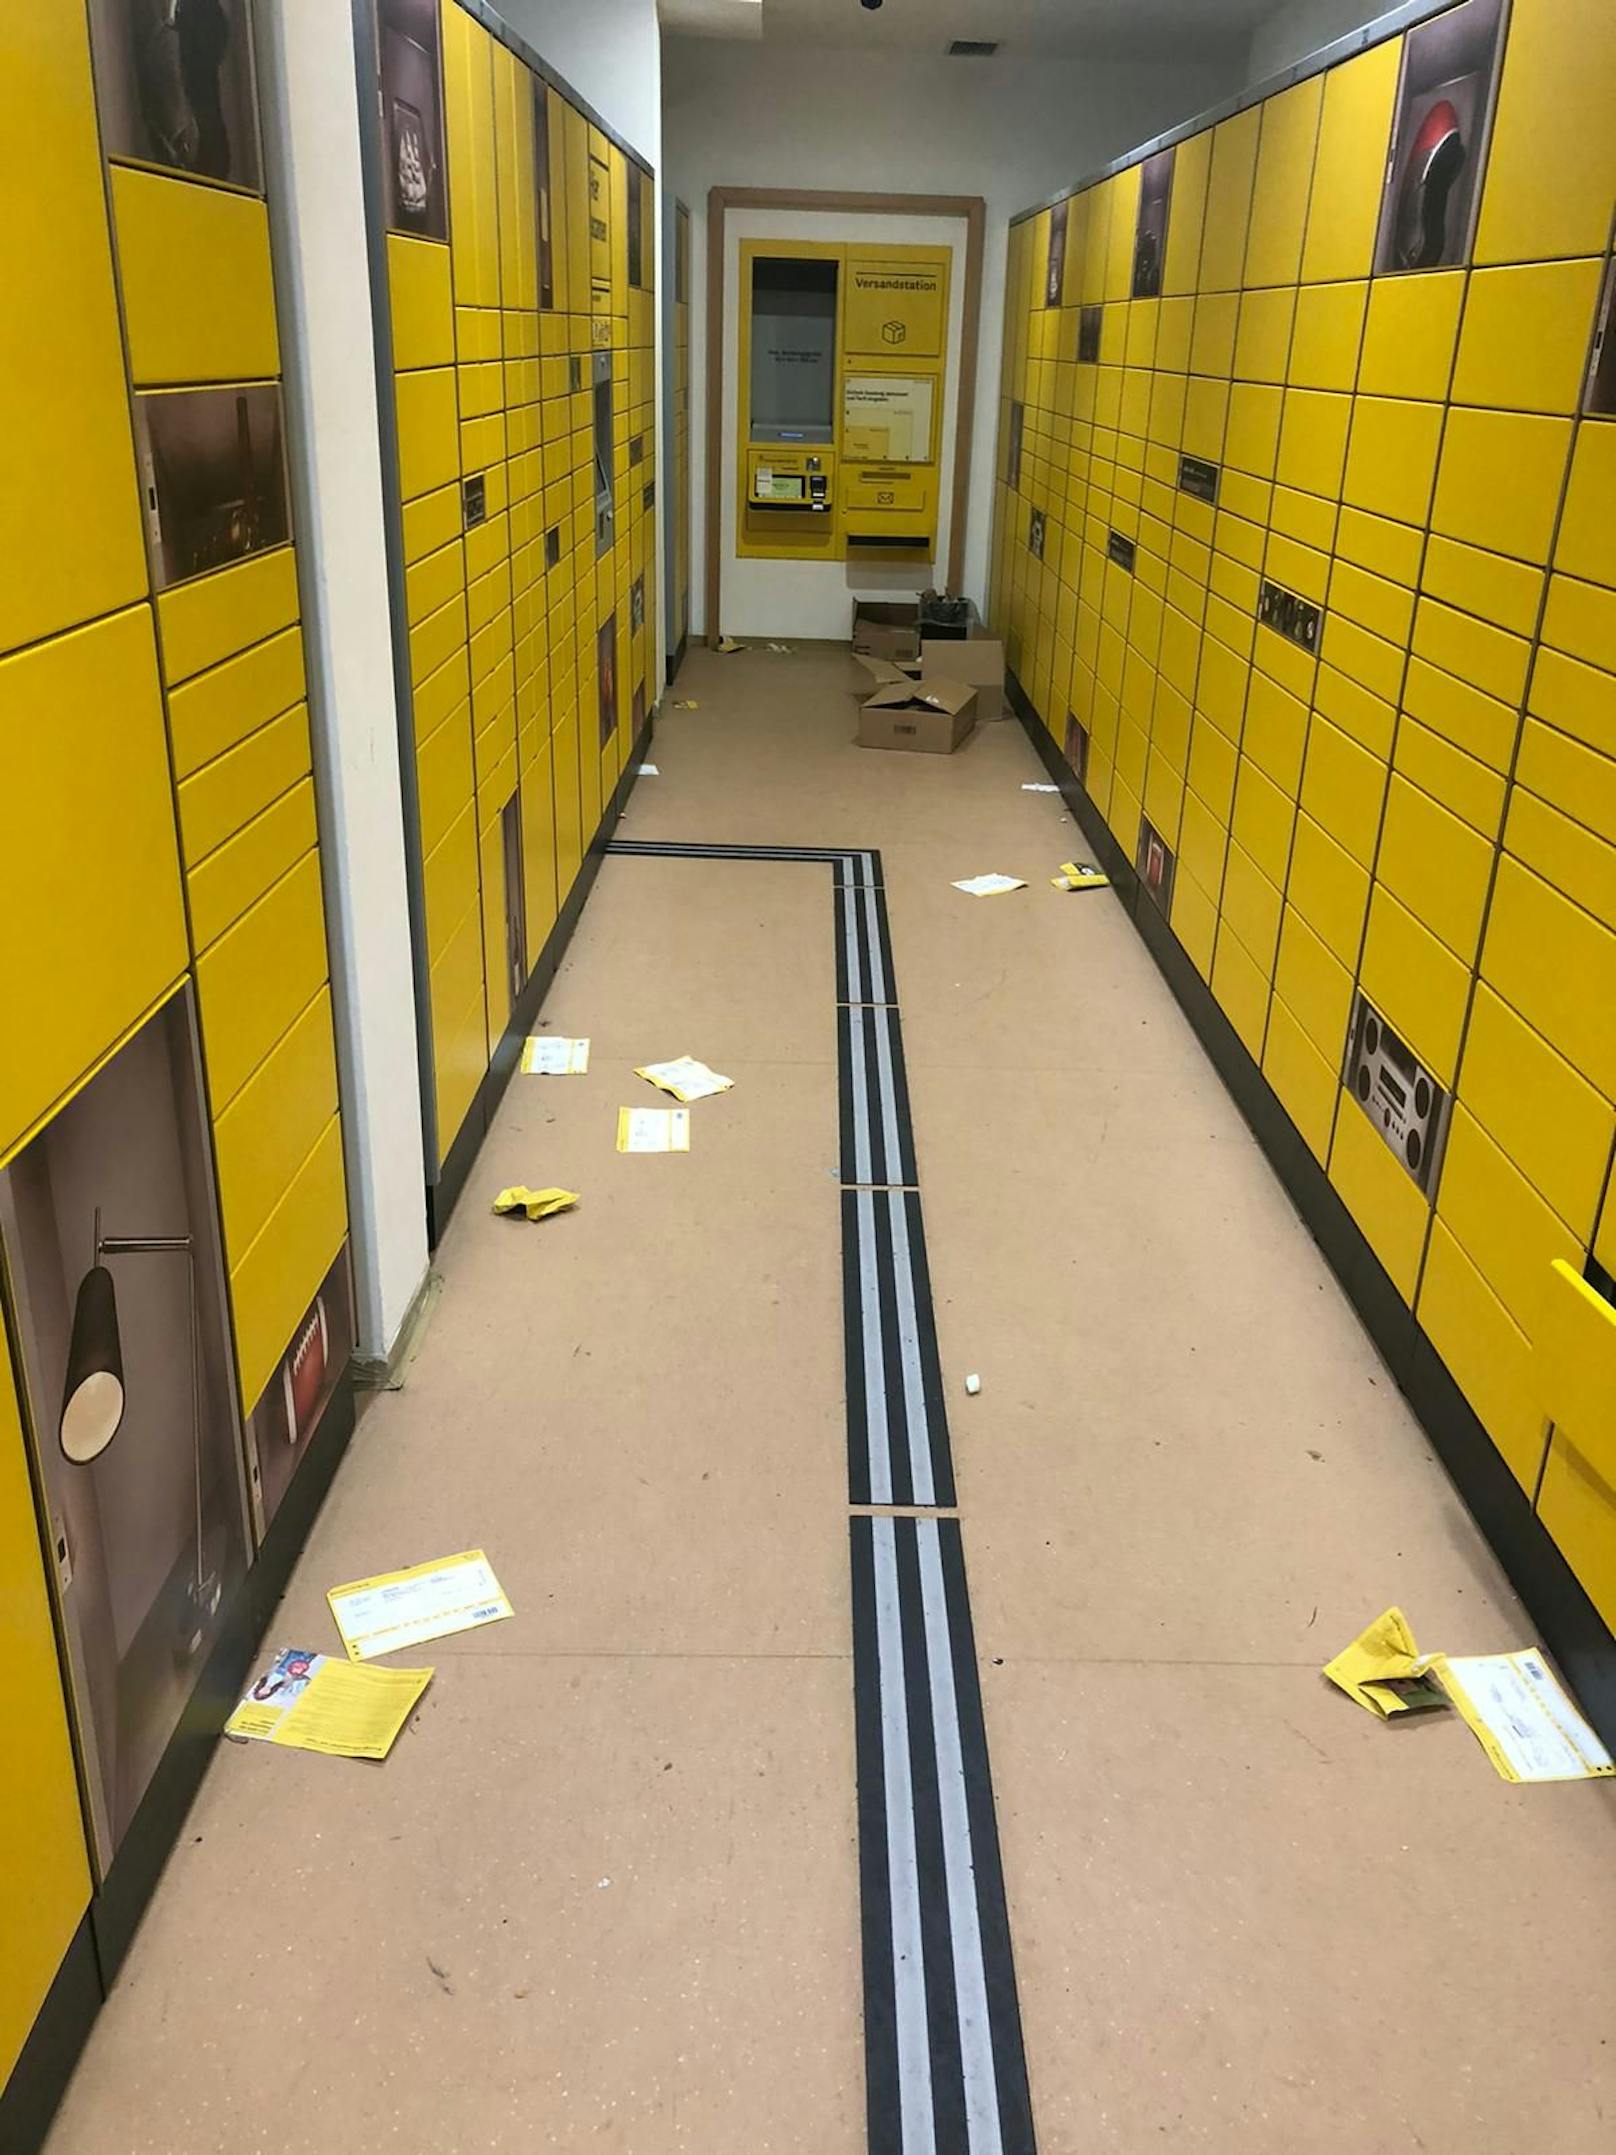 Am Boden stapeln sich gelbe Zettel.